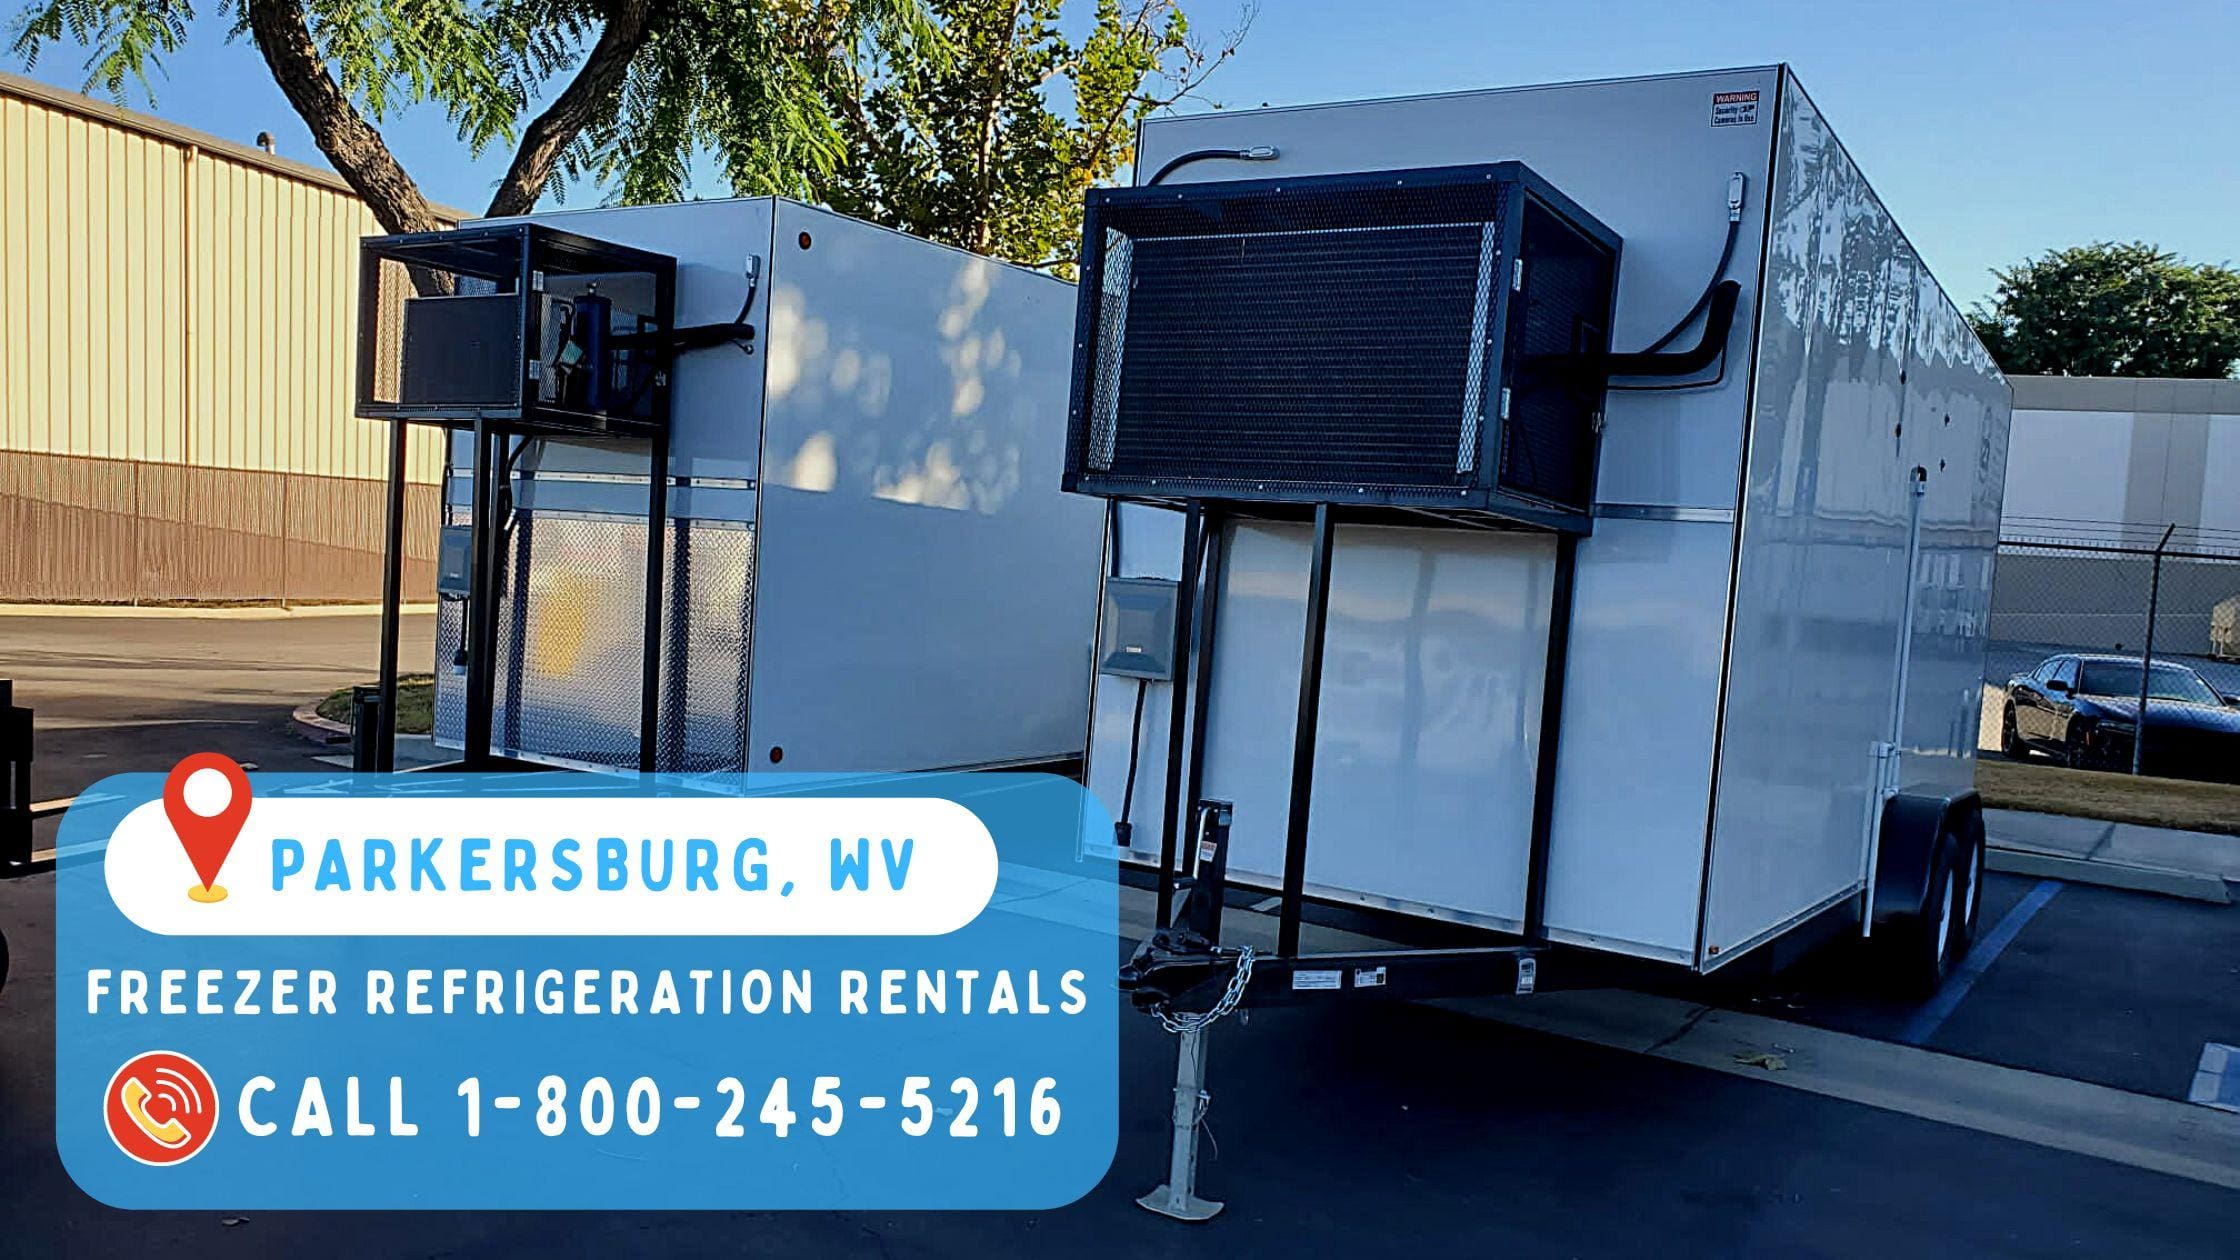 Freezer refrigeration rentals in Parkersburg , WV